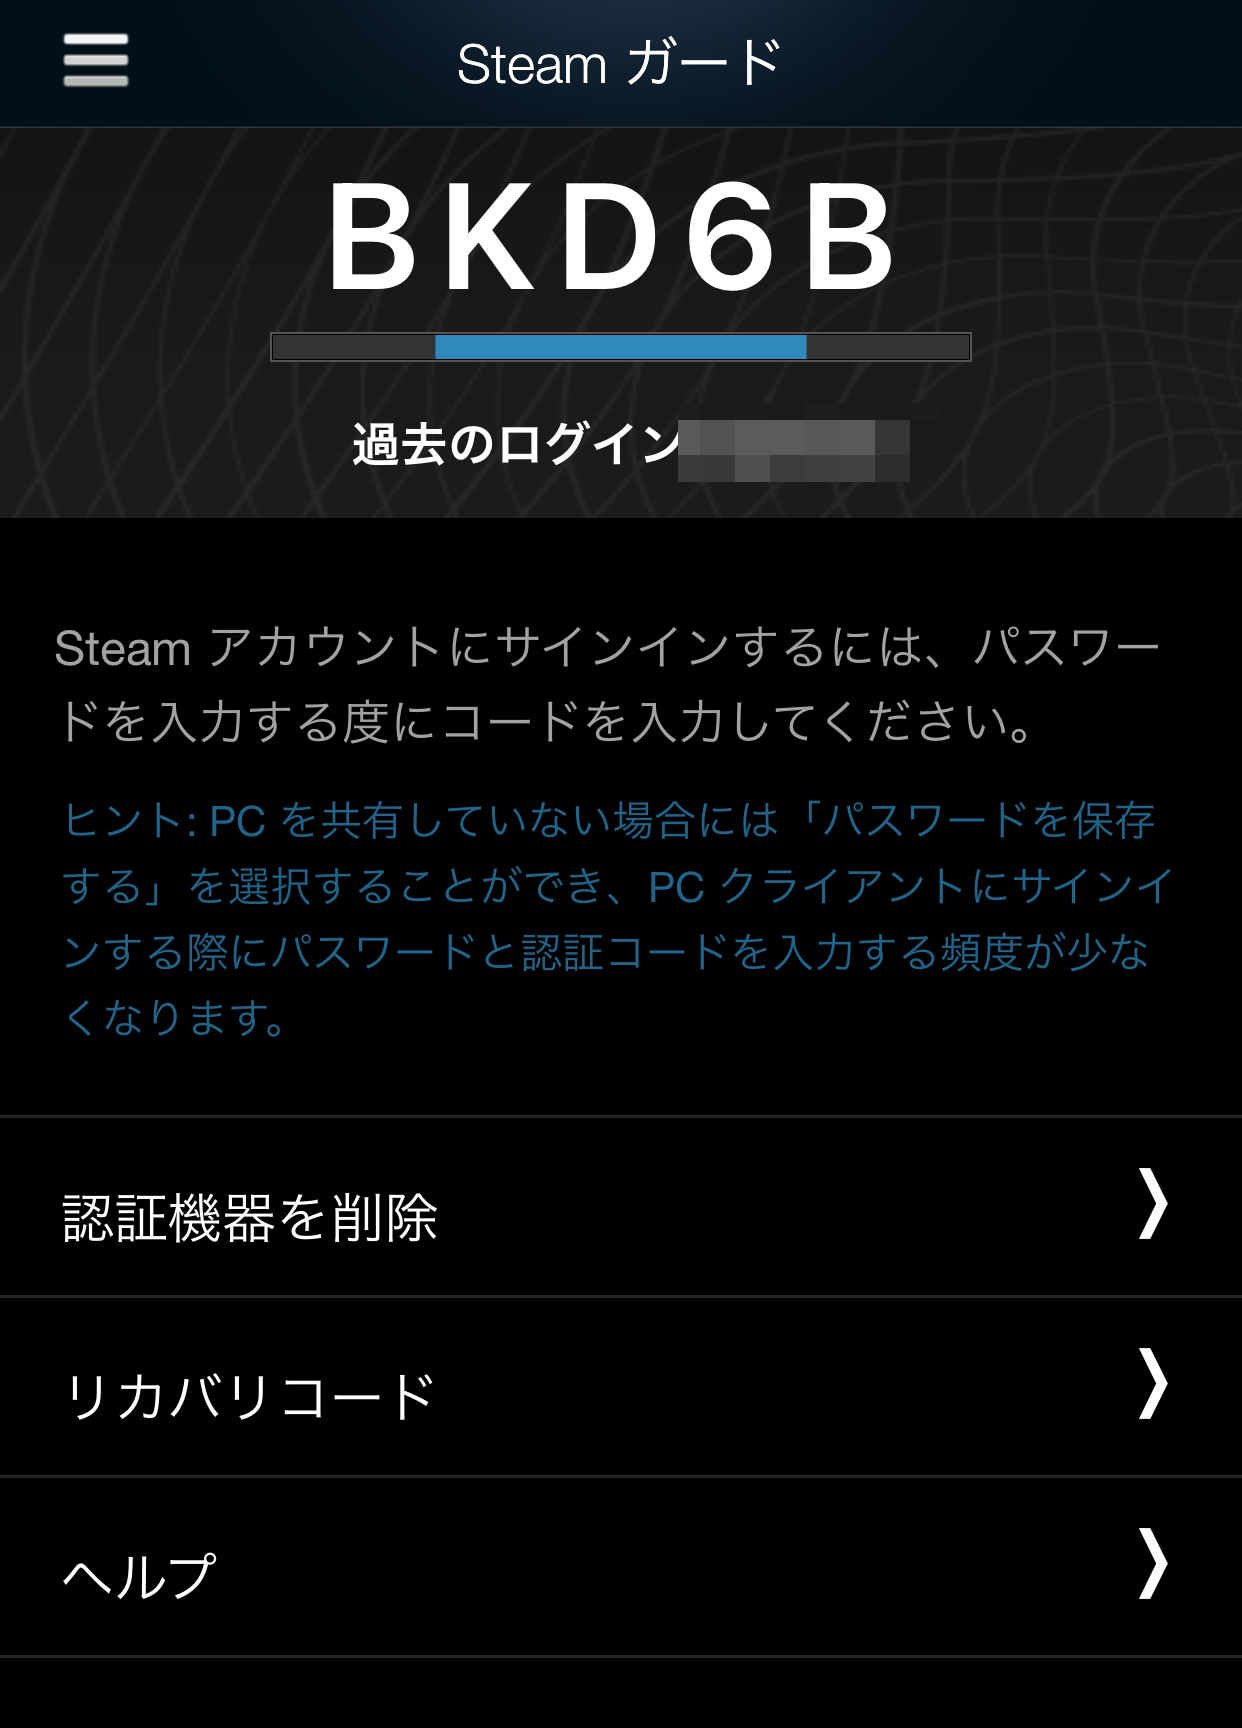 次回以降Steamアカウントへ新規にログインをする場合は、「Steam Mobile」を起動して「Steam ガード」をタップし、そこに表示される文字を入力する形となります。